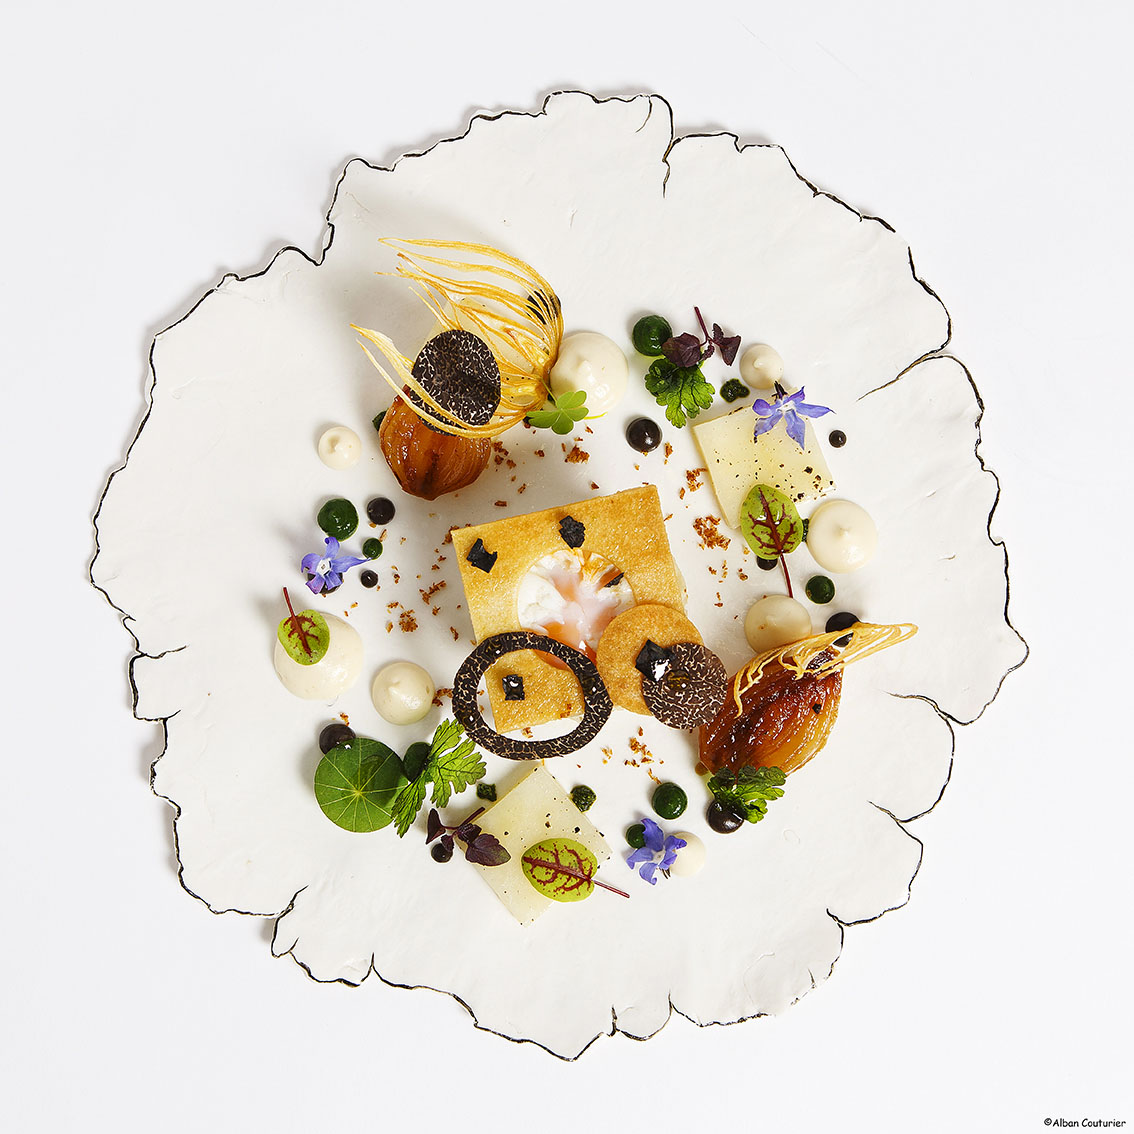 Creation culinaire et graphique Syvestre Wahid, restaurant Sylvestre, Hotel Thoumieux, 2 etoiles au guide Michelin, Paris ©Alban Couturier